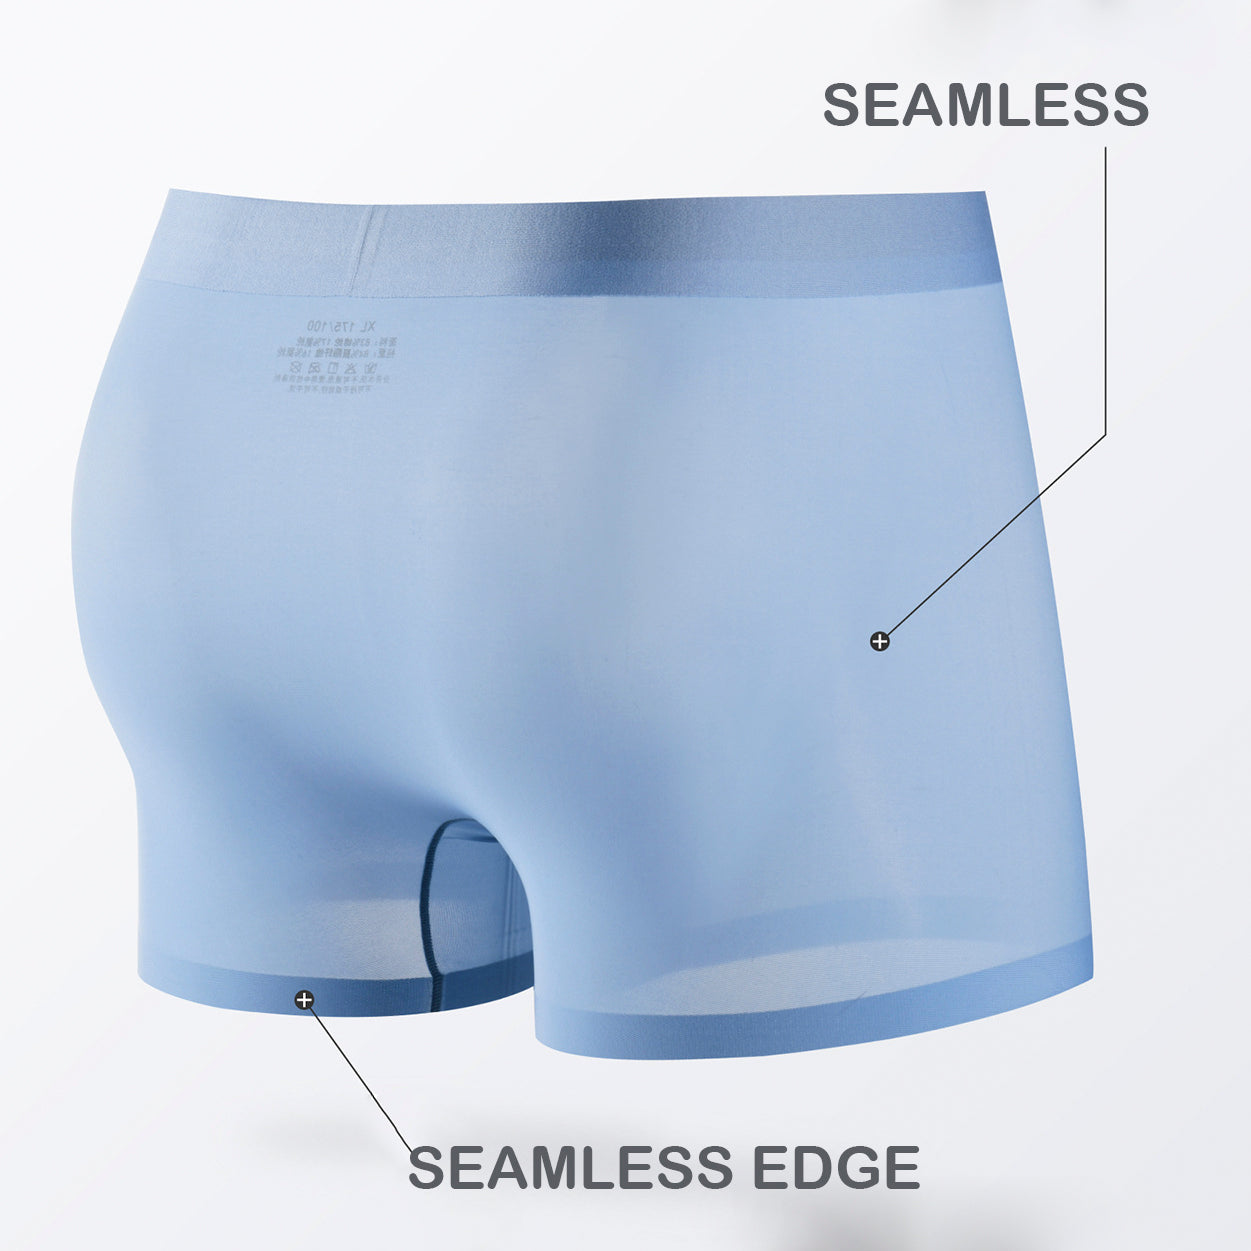 Jewyee Men's Ice Silk Underwear Breathable Soft Ultra-Thin Mesh Boxer  Briefs,Jewyee Mens Ice Silk Underwear (3-E,2XL)